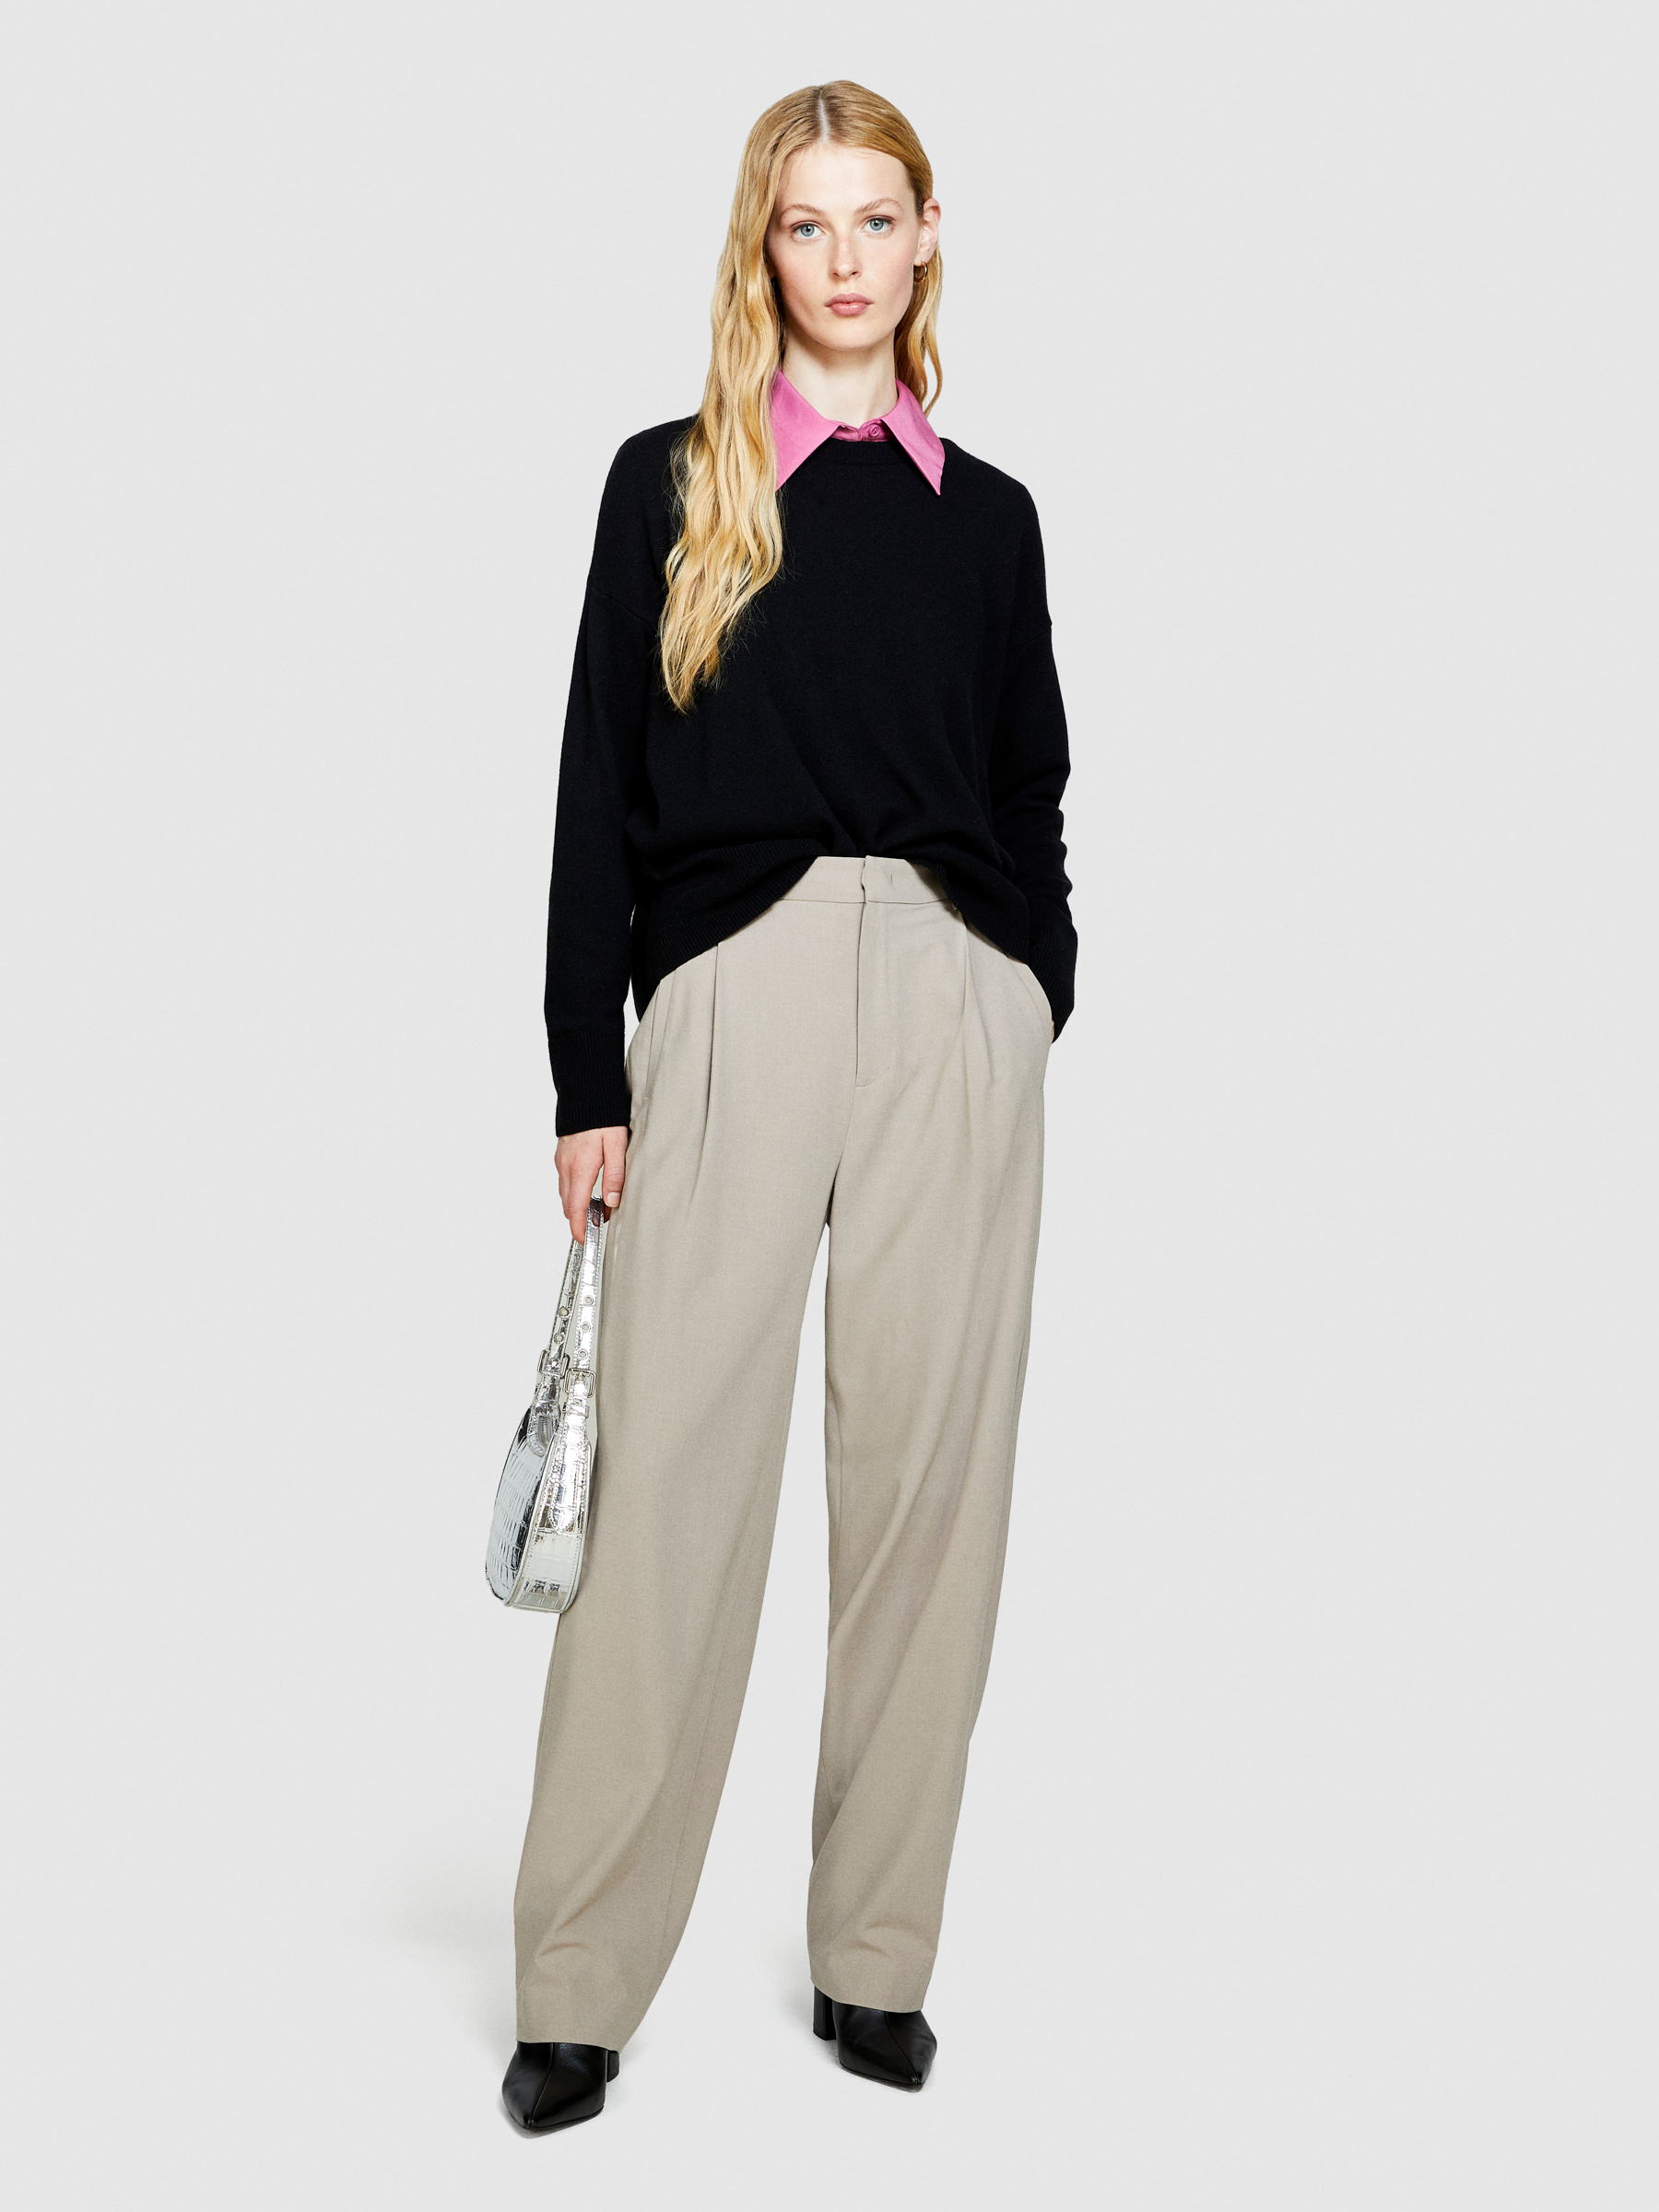 Sisley - Boxy Fit Sweater, Woman, Black, Size: S